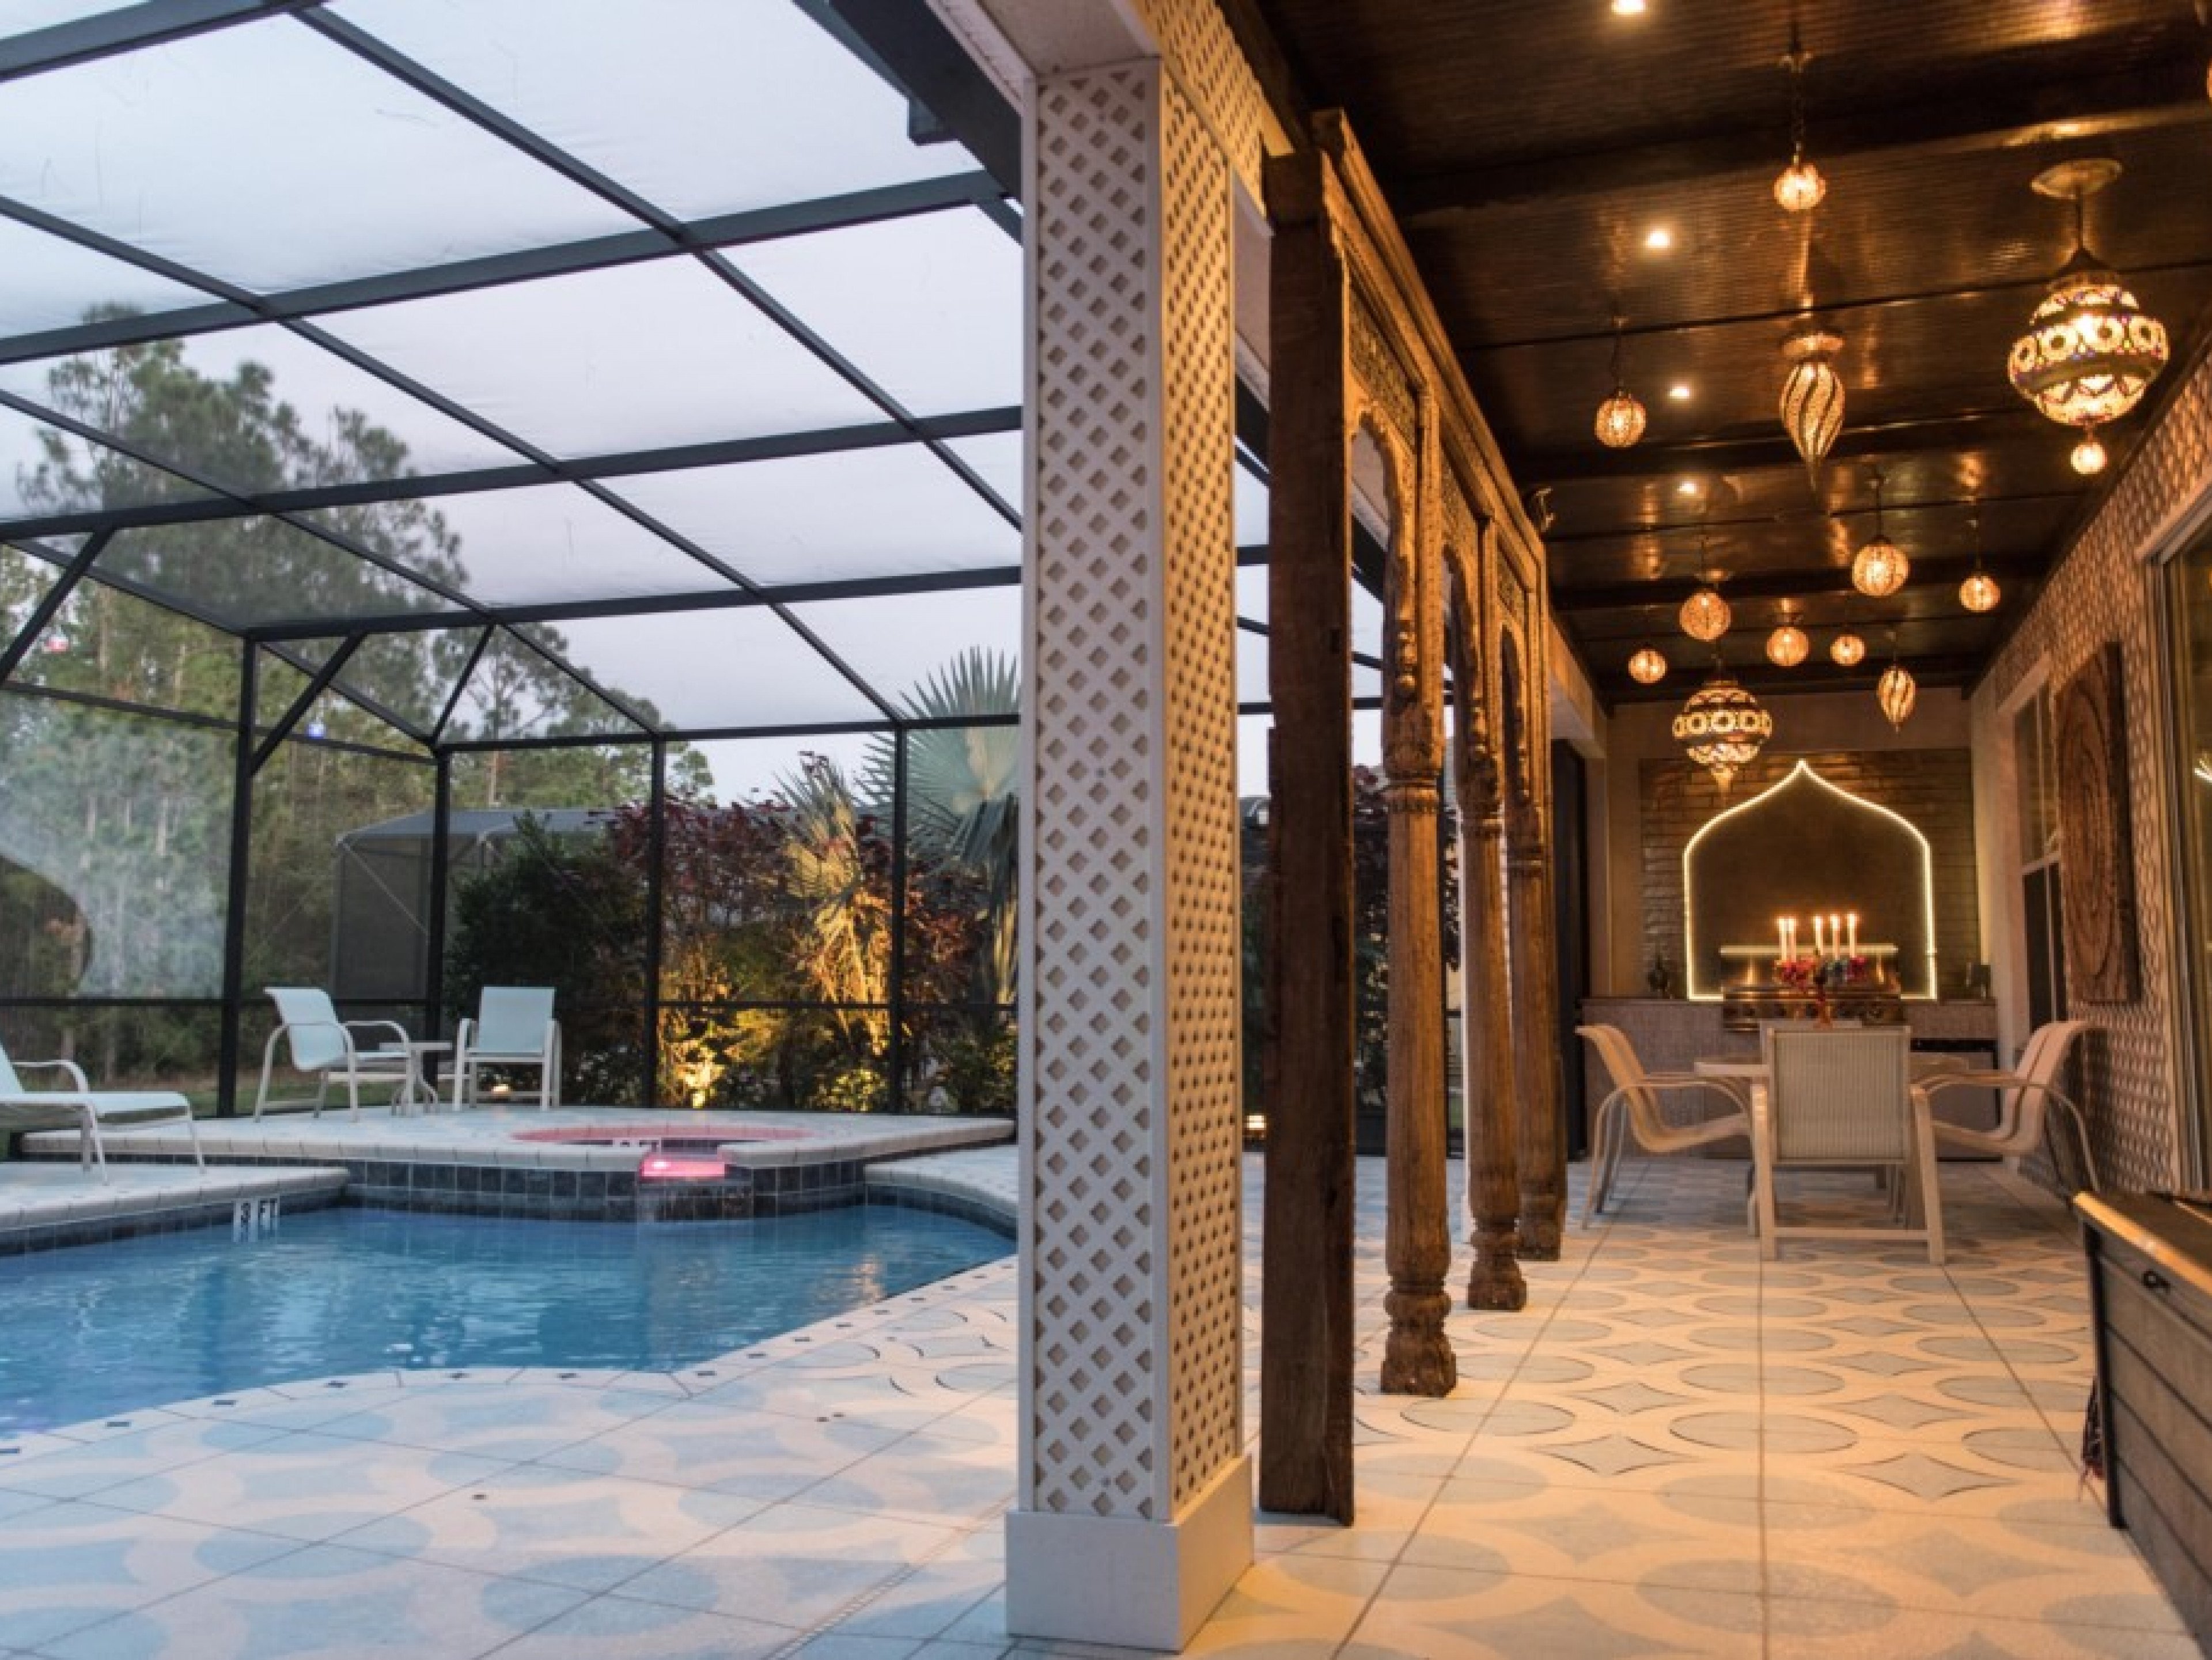 6 bedroom vacation rentals in Orlando Florida Watersong Resort 6